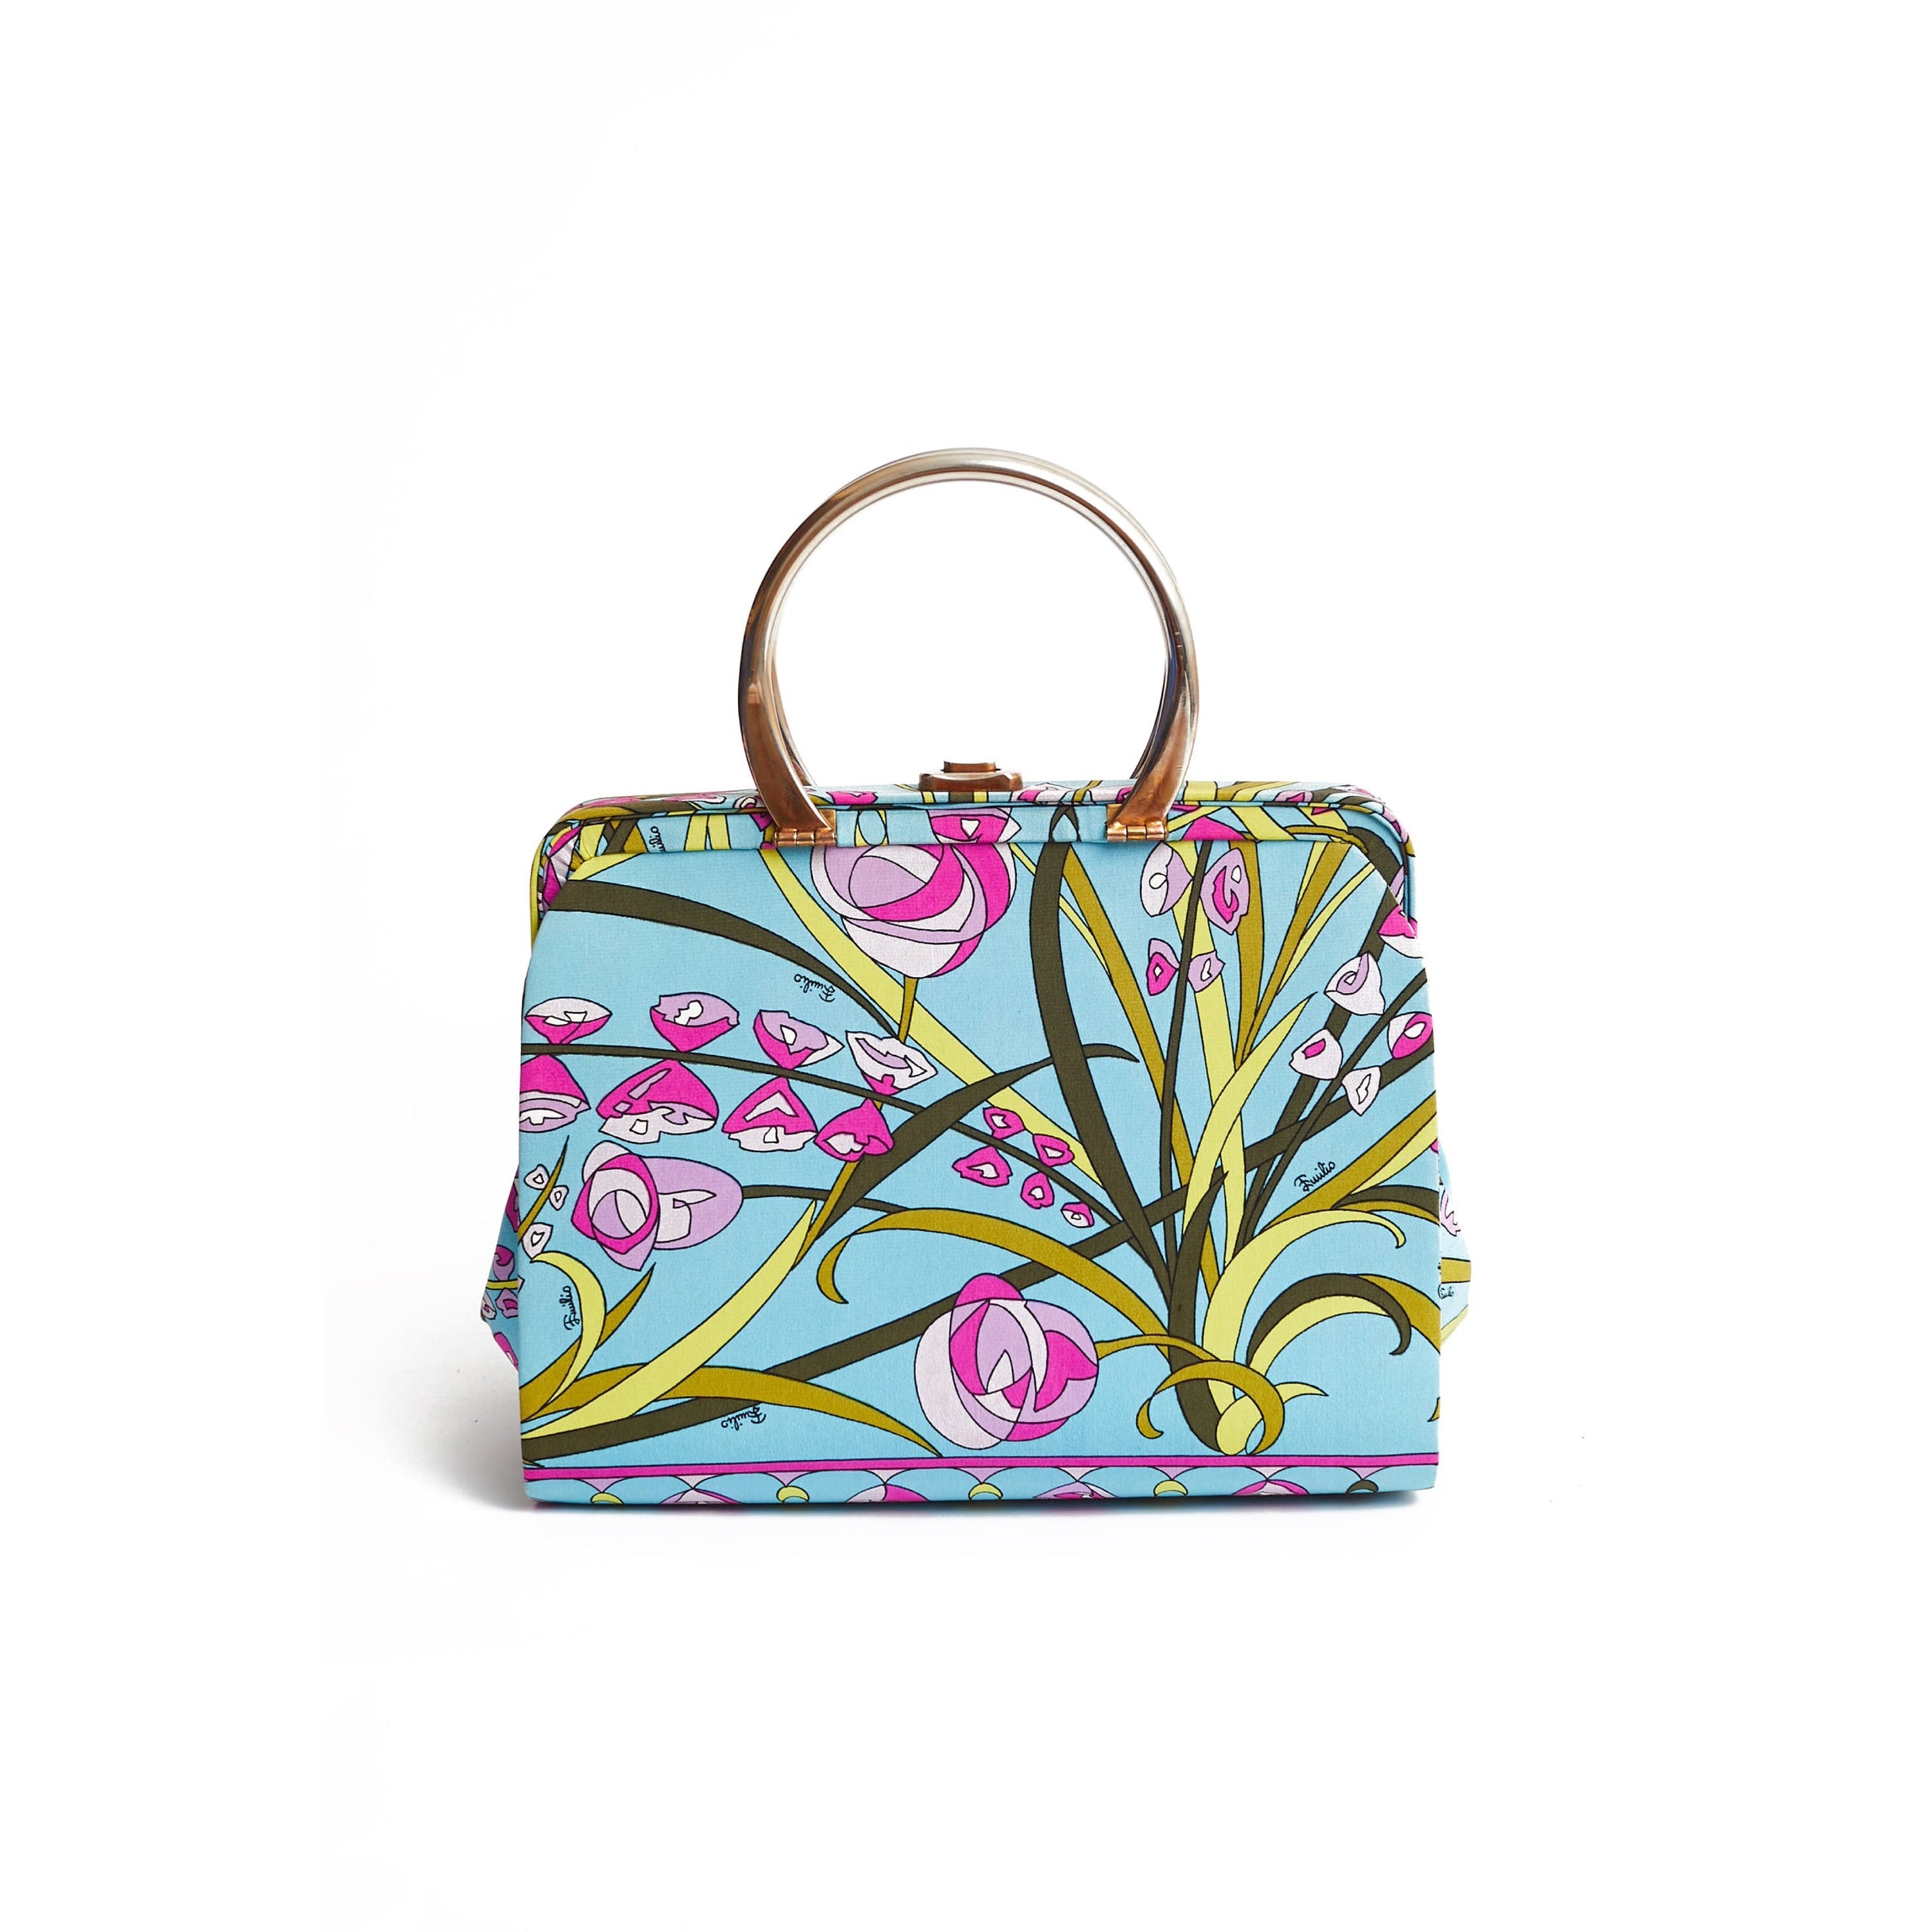 Emilio Pucci, Bags, Authentic Emilio Pucci Handbag Mini Tote Bag Used